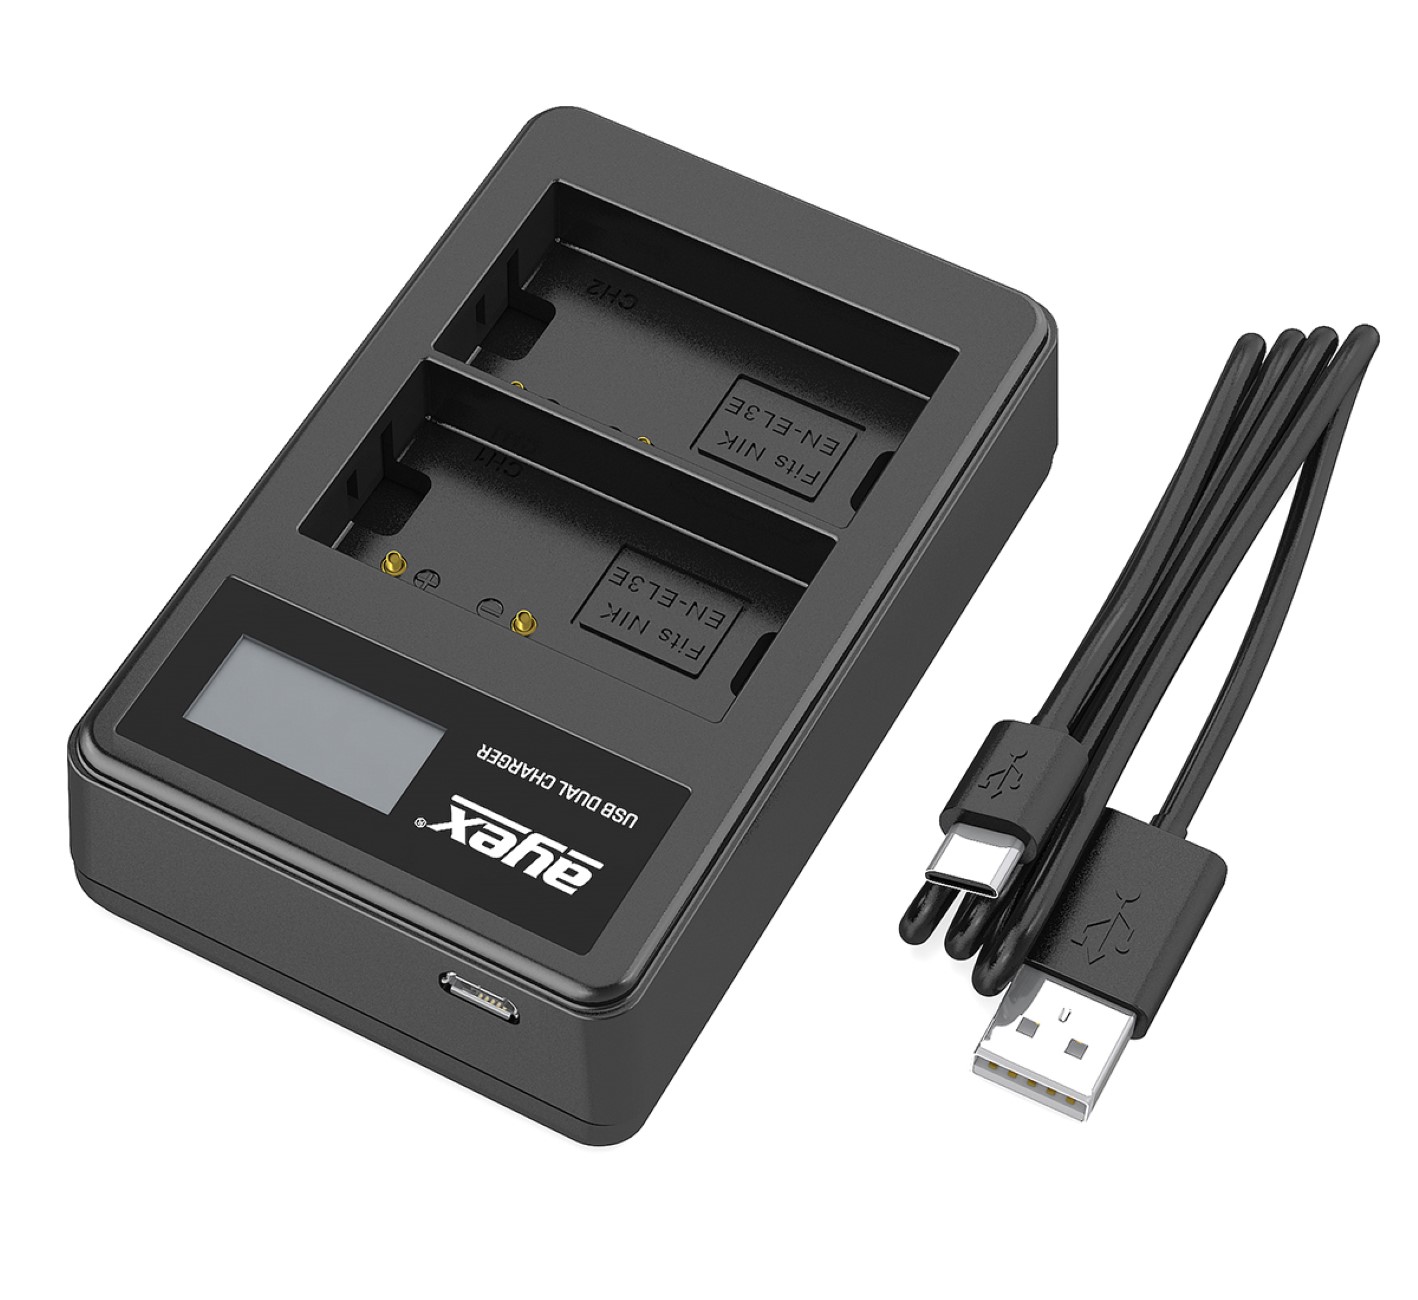 ayex Power Set mit 2x EN-EL3E Akku für Nikon + 1x USB Dual Ladegerät